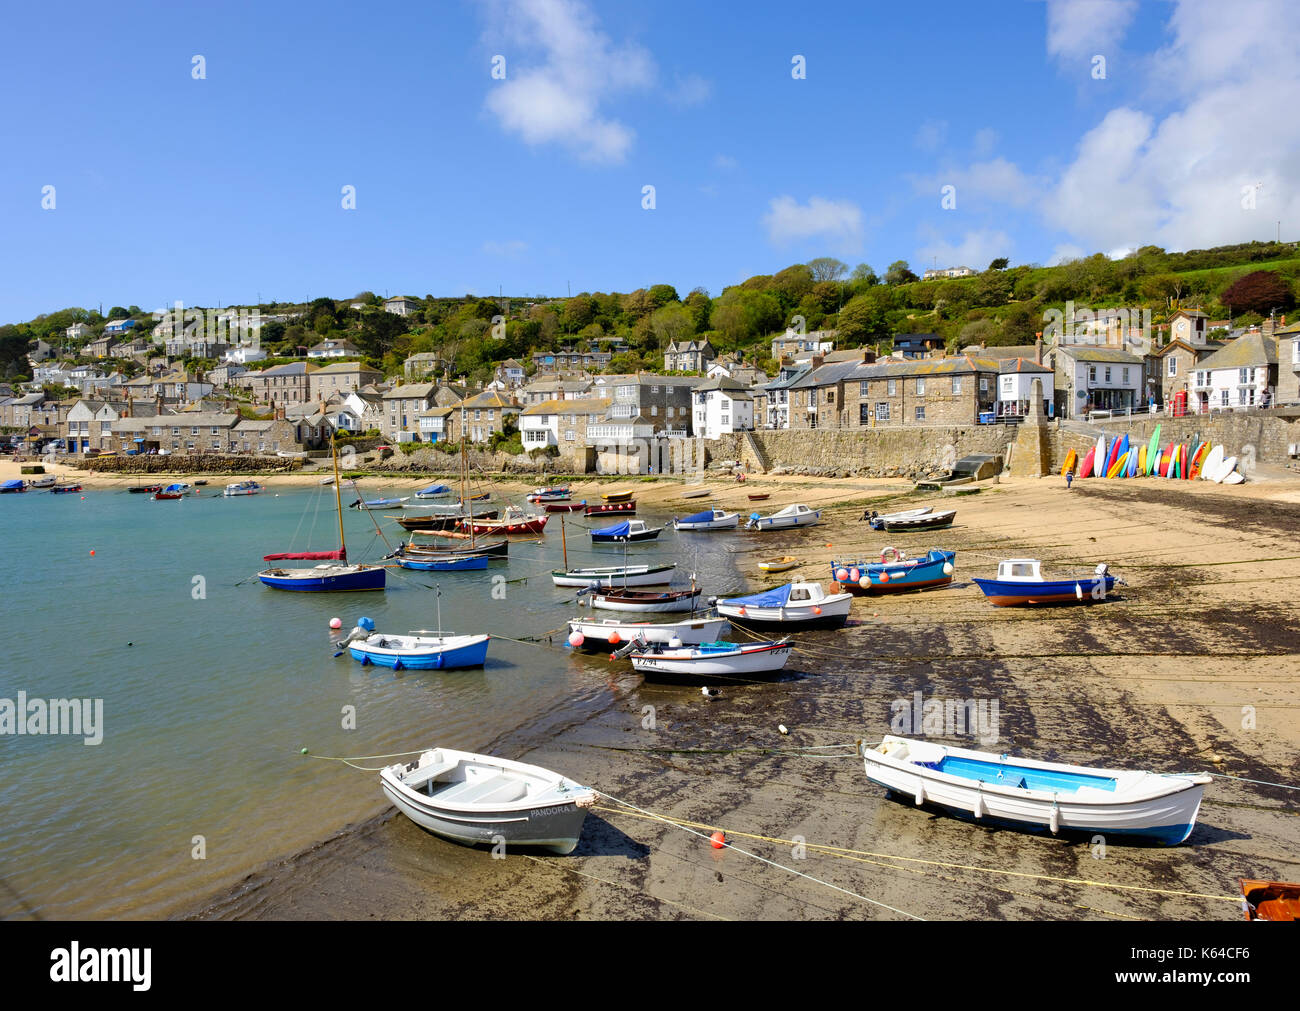 Les bateaux de pêche au port de pêche, mousehoule, Cornwall, Angleterre, Grande-Bretagne Banque D'Images